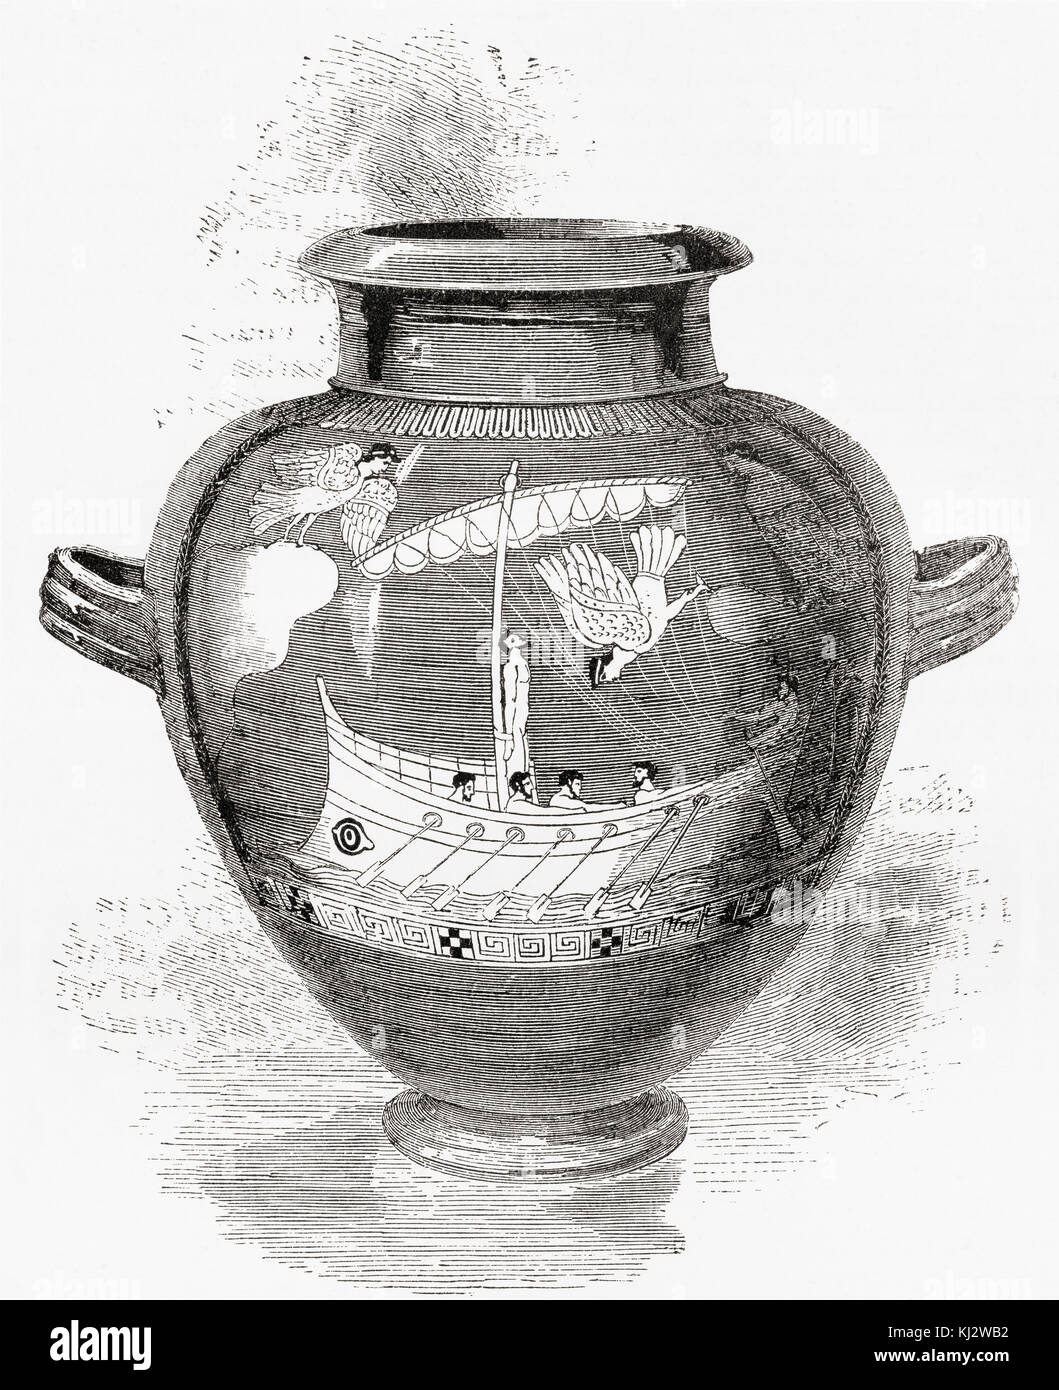 Arte etrusca Antico vaso che rappresenta la storia di Ulisse e delle Sirene. Da The Illustrated History of the World di Ward and Lock, pubblicato intorno al 1882. Foto Stock